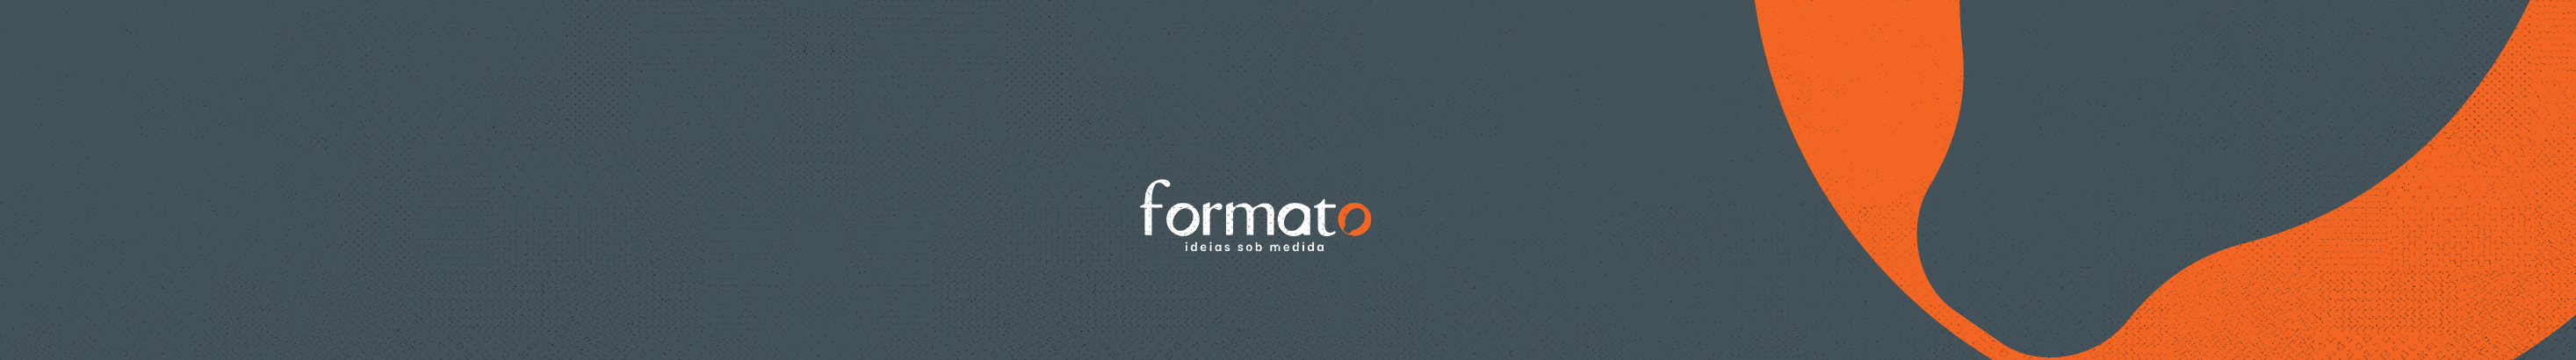 Formato Ideias's profile banner